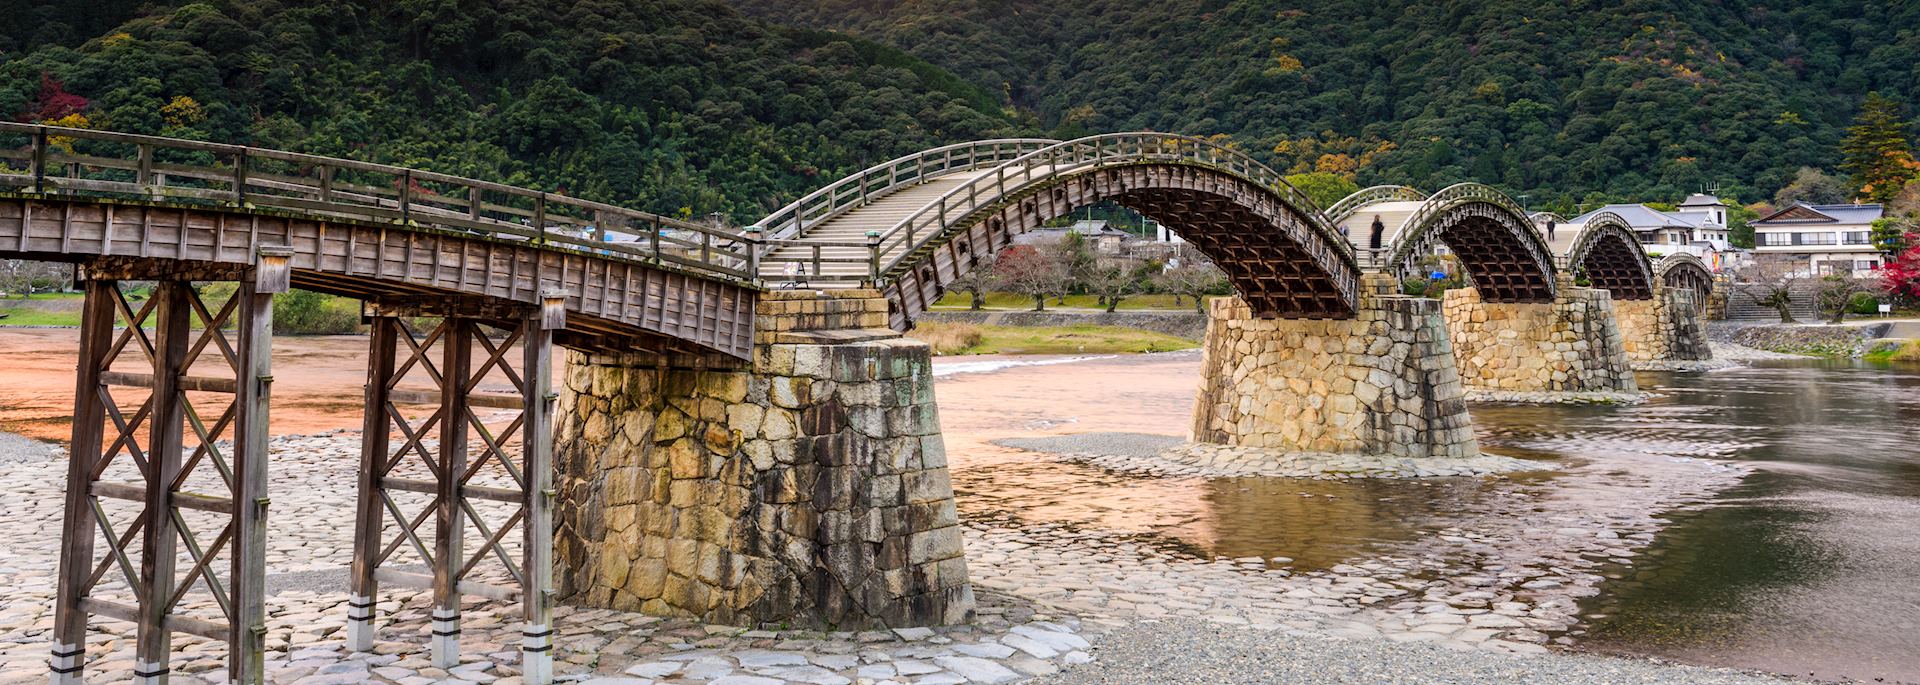 The 17th-century Kintai Bridge in Iwakuni